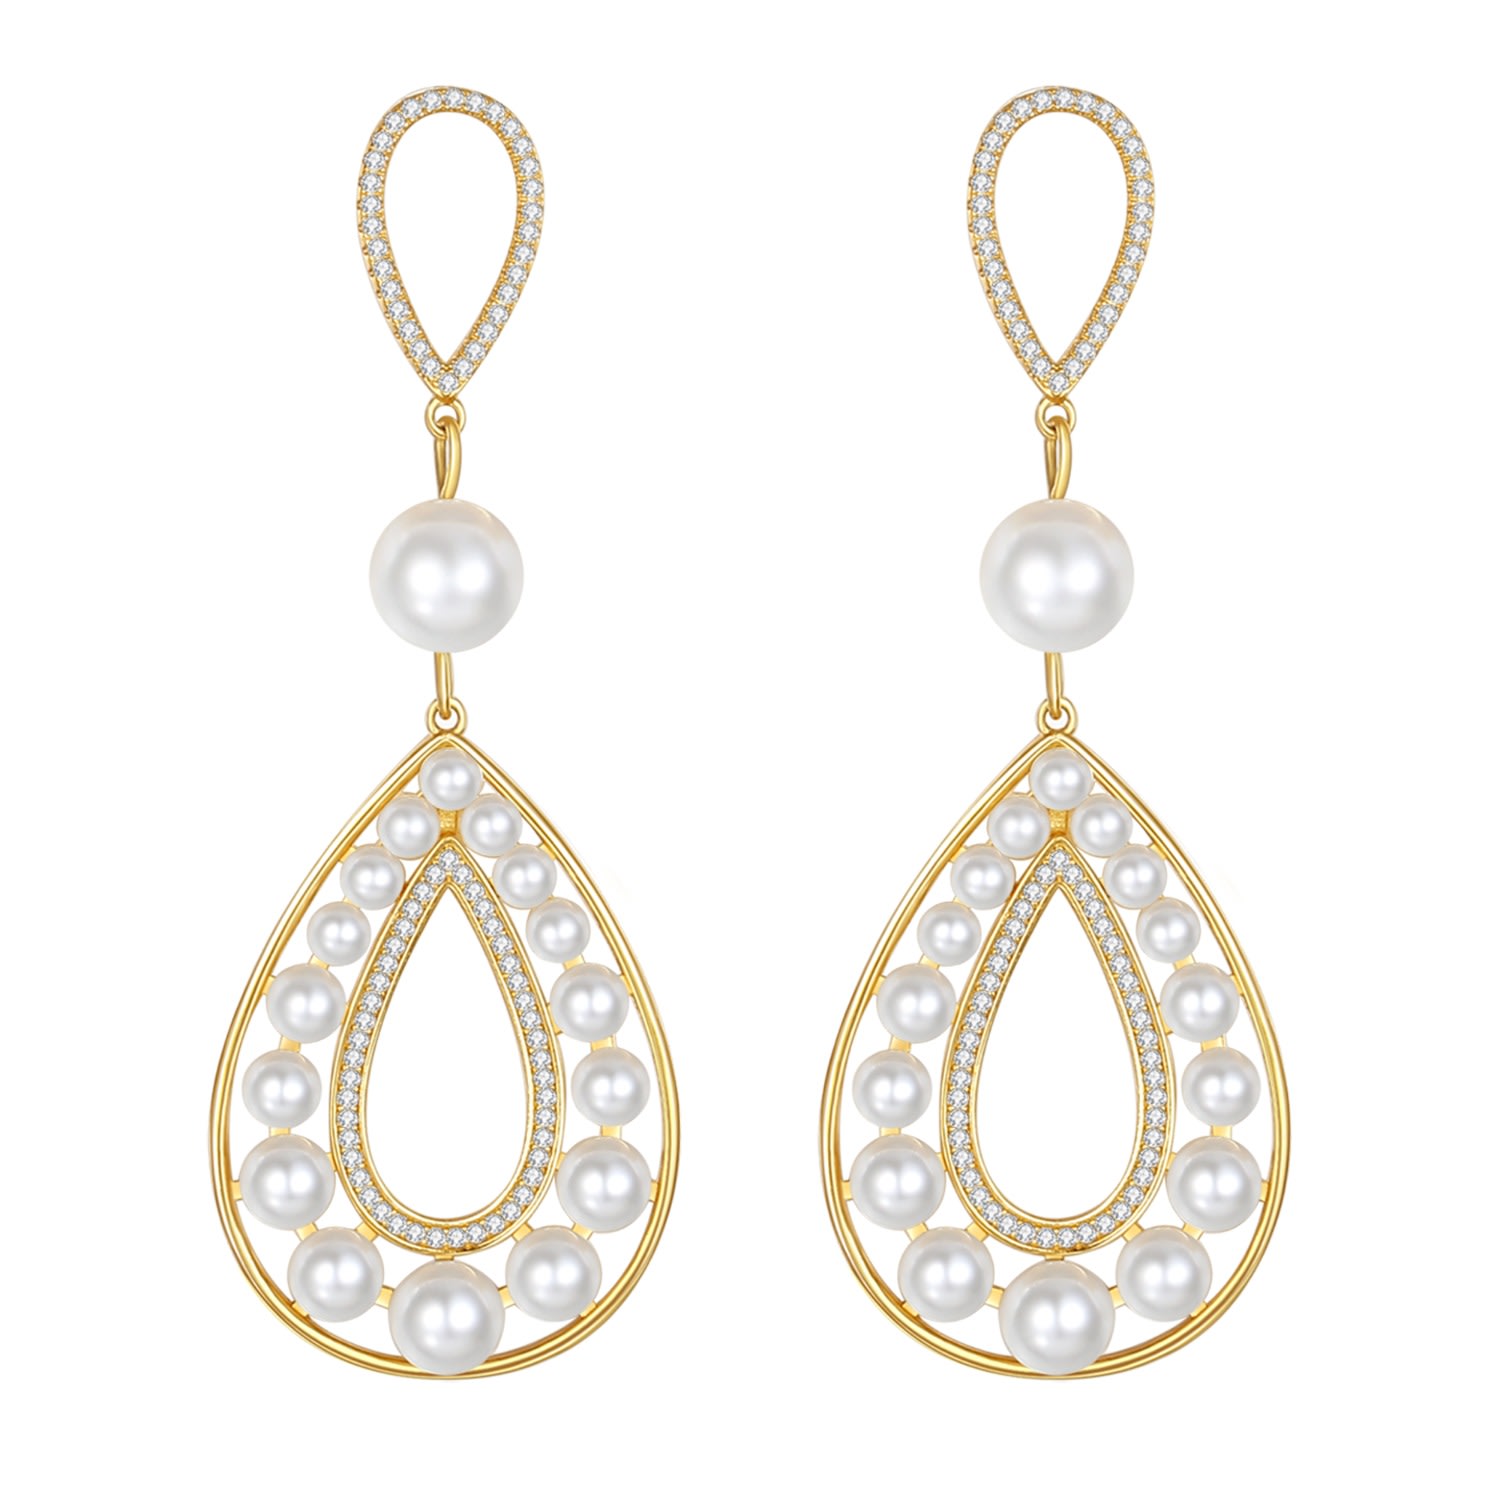 Shop Classicharms Women's Gold Hollow Teardrop Dangle Earrings